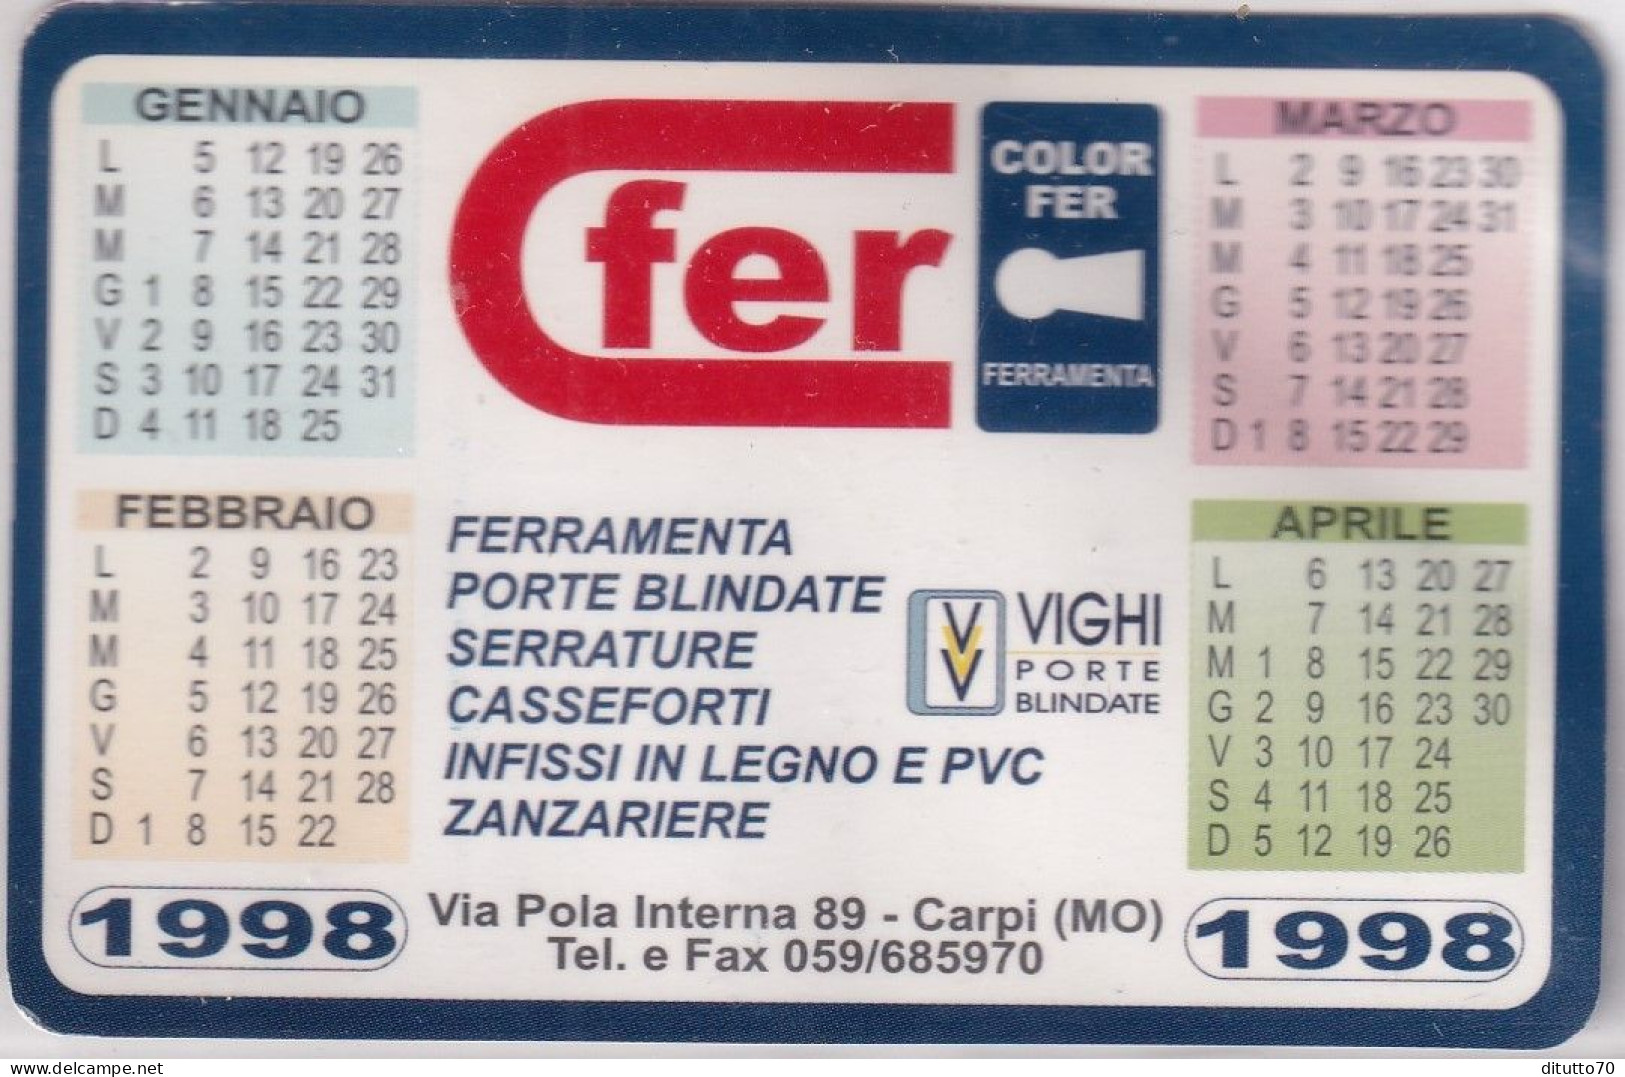 Calendarietto - Fer - Color Per Ferramenta - Carpi - Modena - Anno 1998 - Small : 1991-00